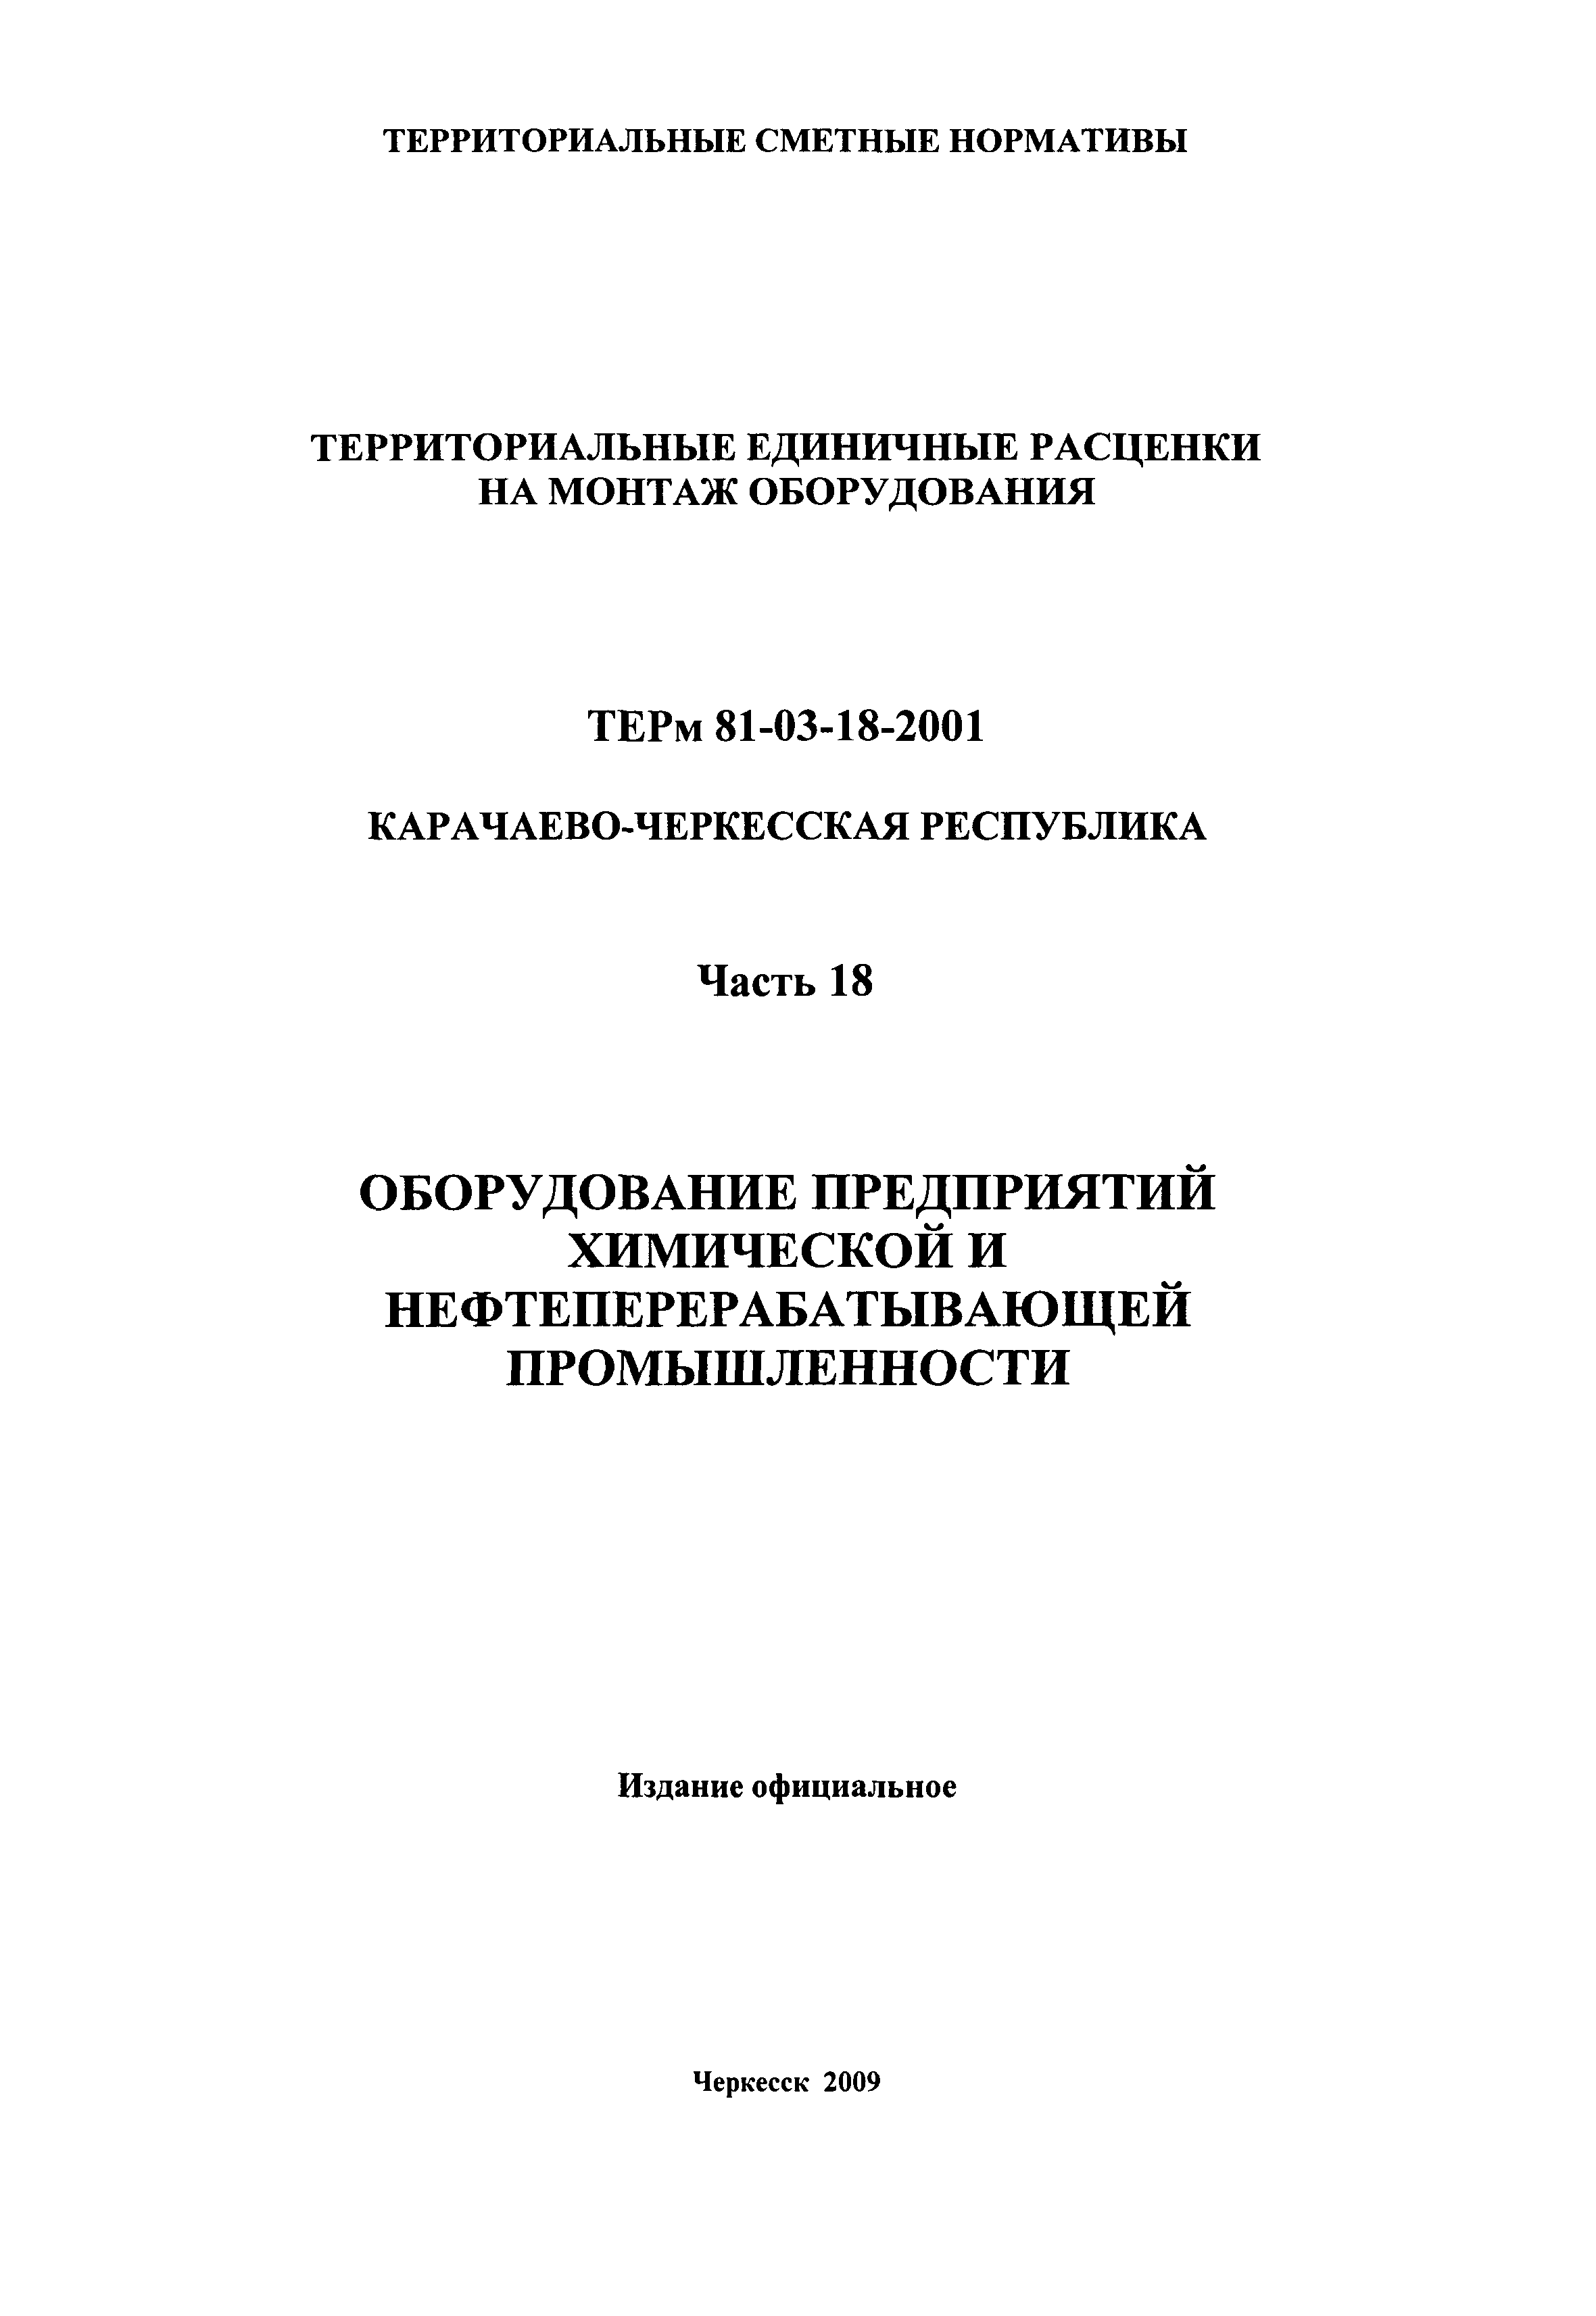 ТЕРм Карачаево-Черкесская Республика 18-2001